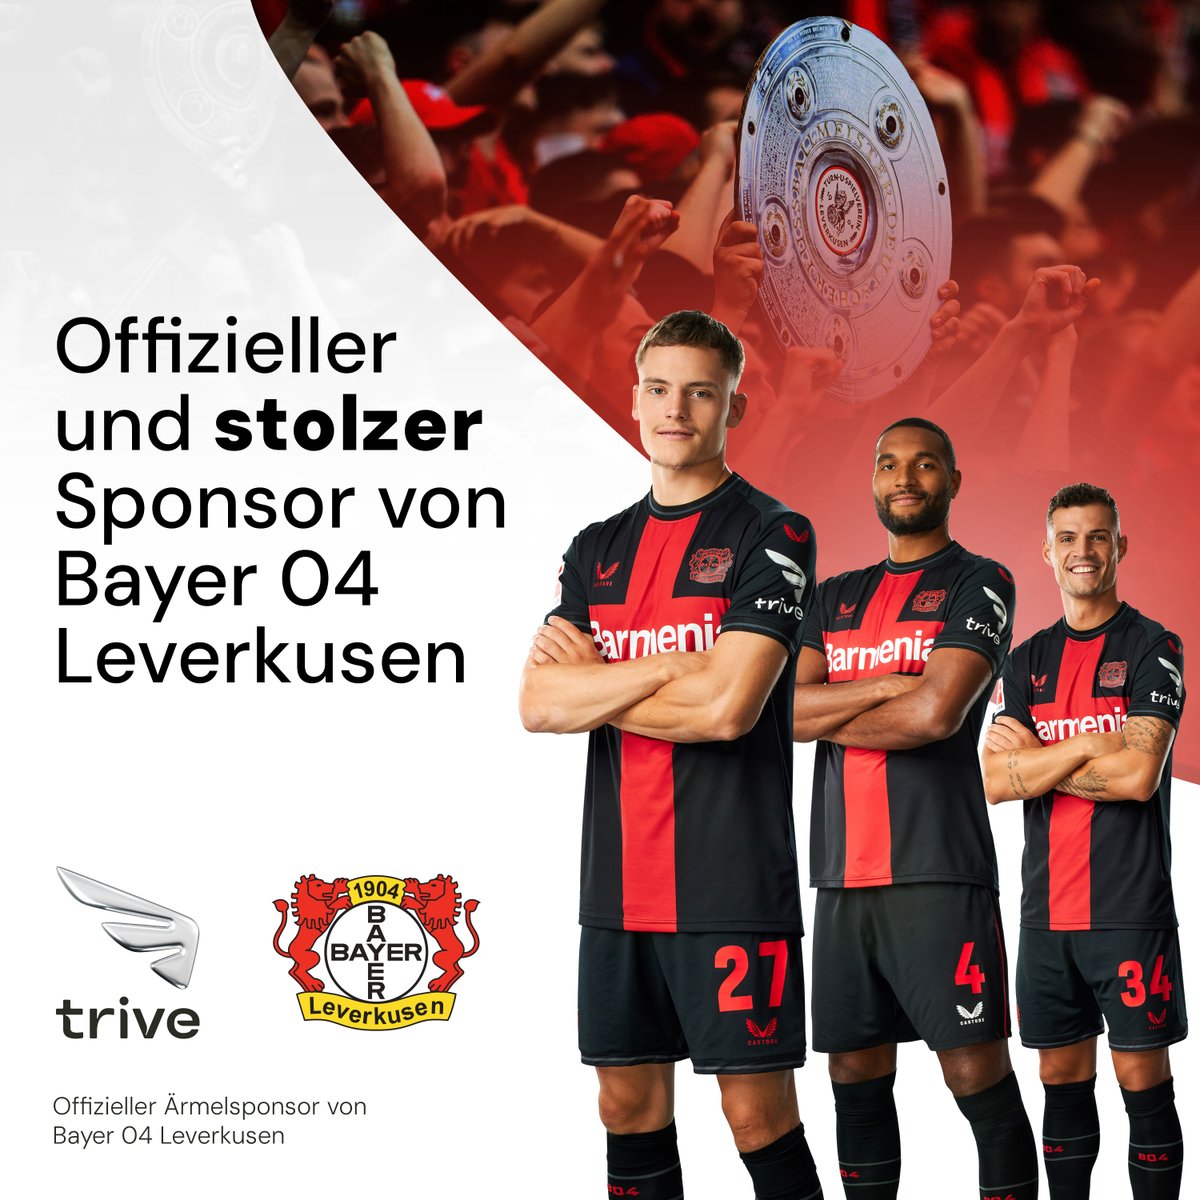 Arbeit, Engagement und Teamarbeit haben sich ausgezahlt. Bayer 04 Leverkusen ist verdienter Deutscher Meister 2023-2024 geworden. Als Trive-Familie gratulieren wir Bayer 04 Leverkusen und Allen die den Verein auf dieser Reise begleiten, auf das Herzlichste.